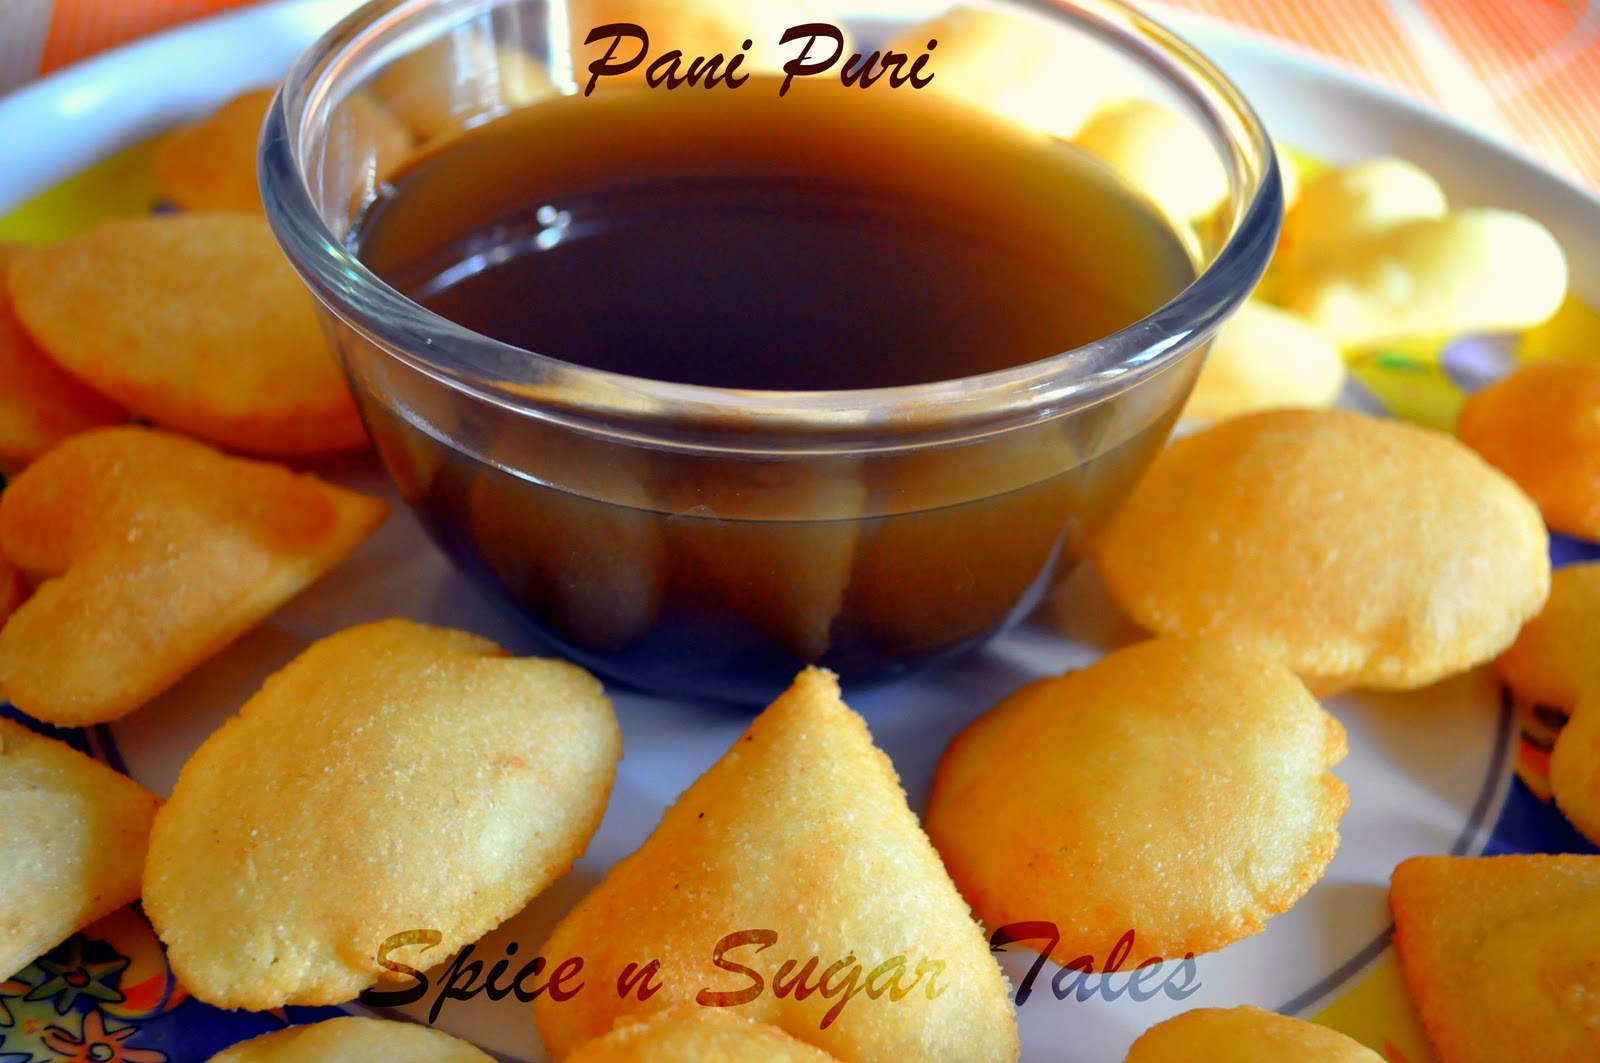 Spice n Sugar Tales: Pani Puri/ Puchka/ Gol Gappa